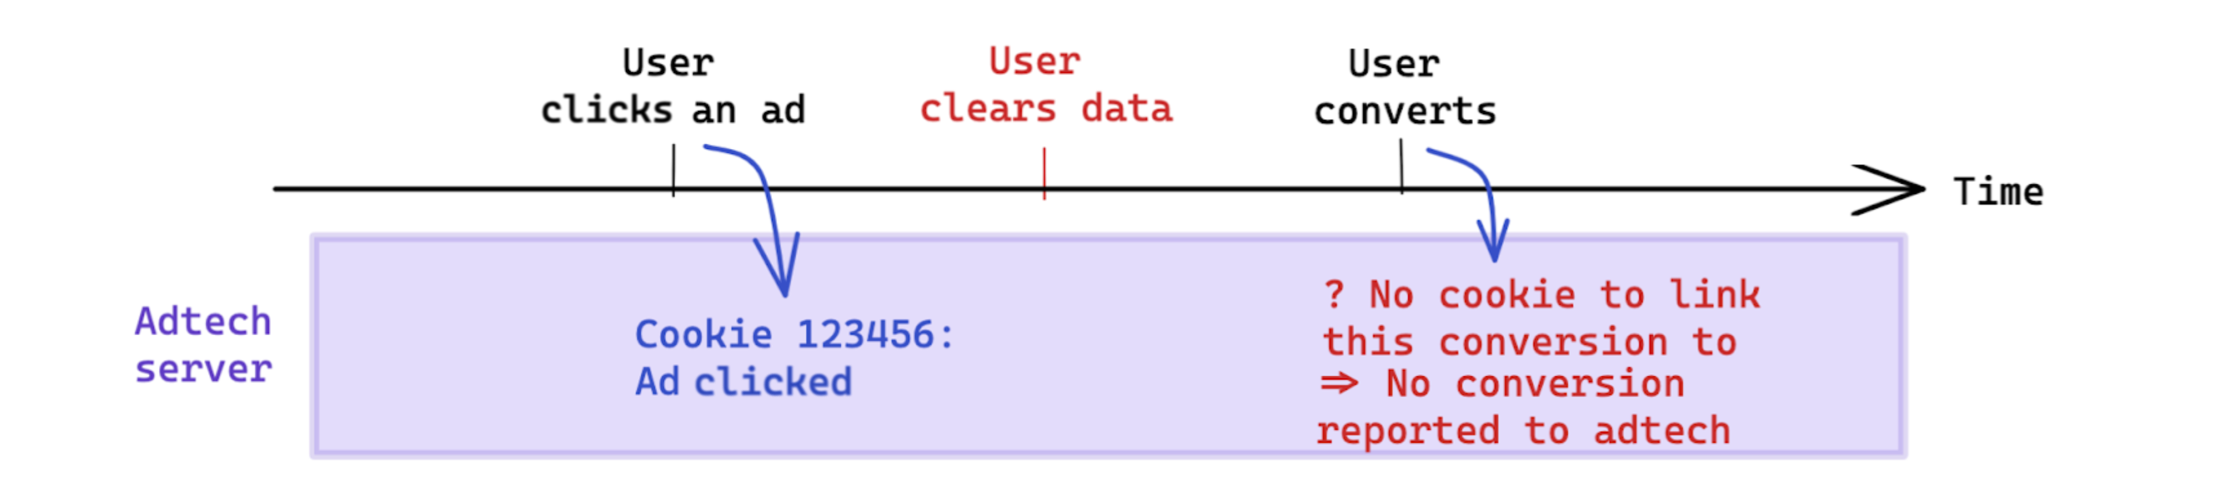 Borrado de datos iniciado por el usuario antes de que una conversión afecte la medición basada en cookies.